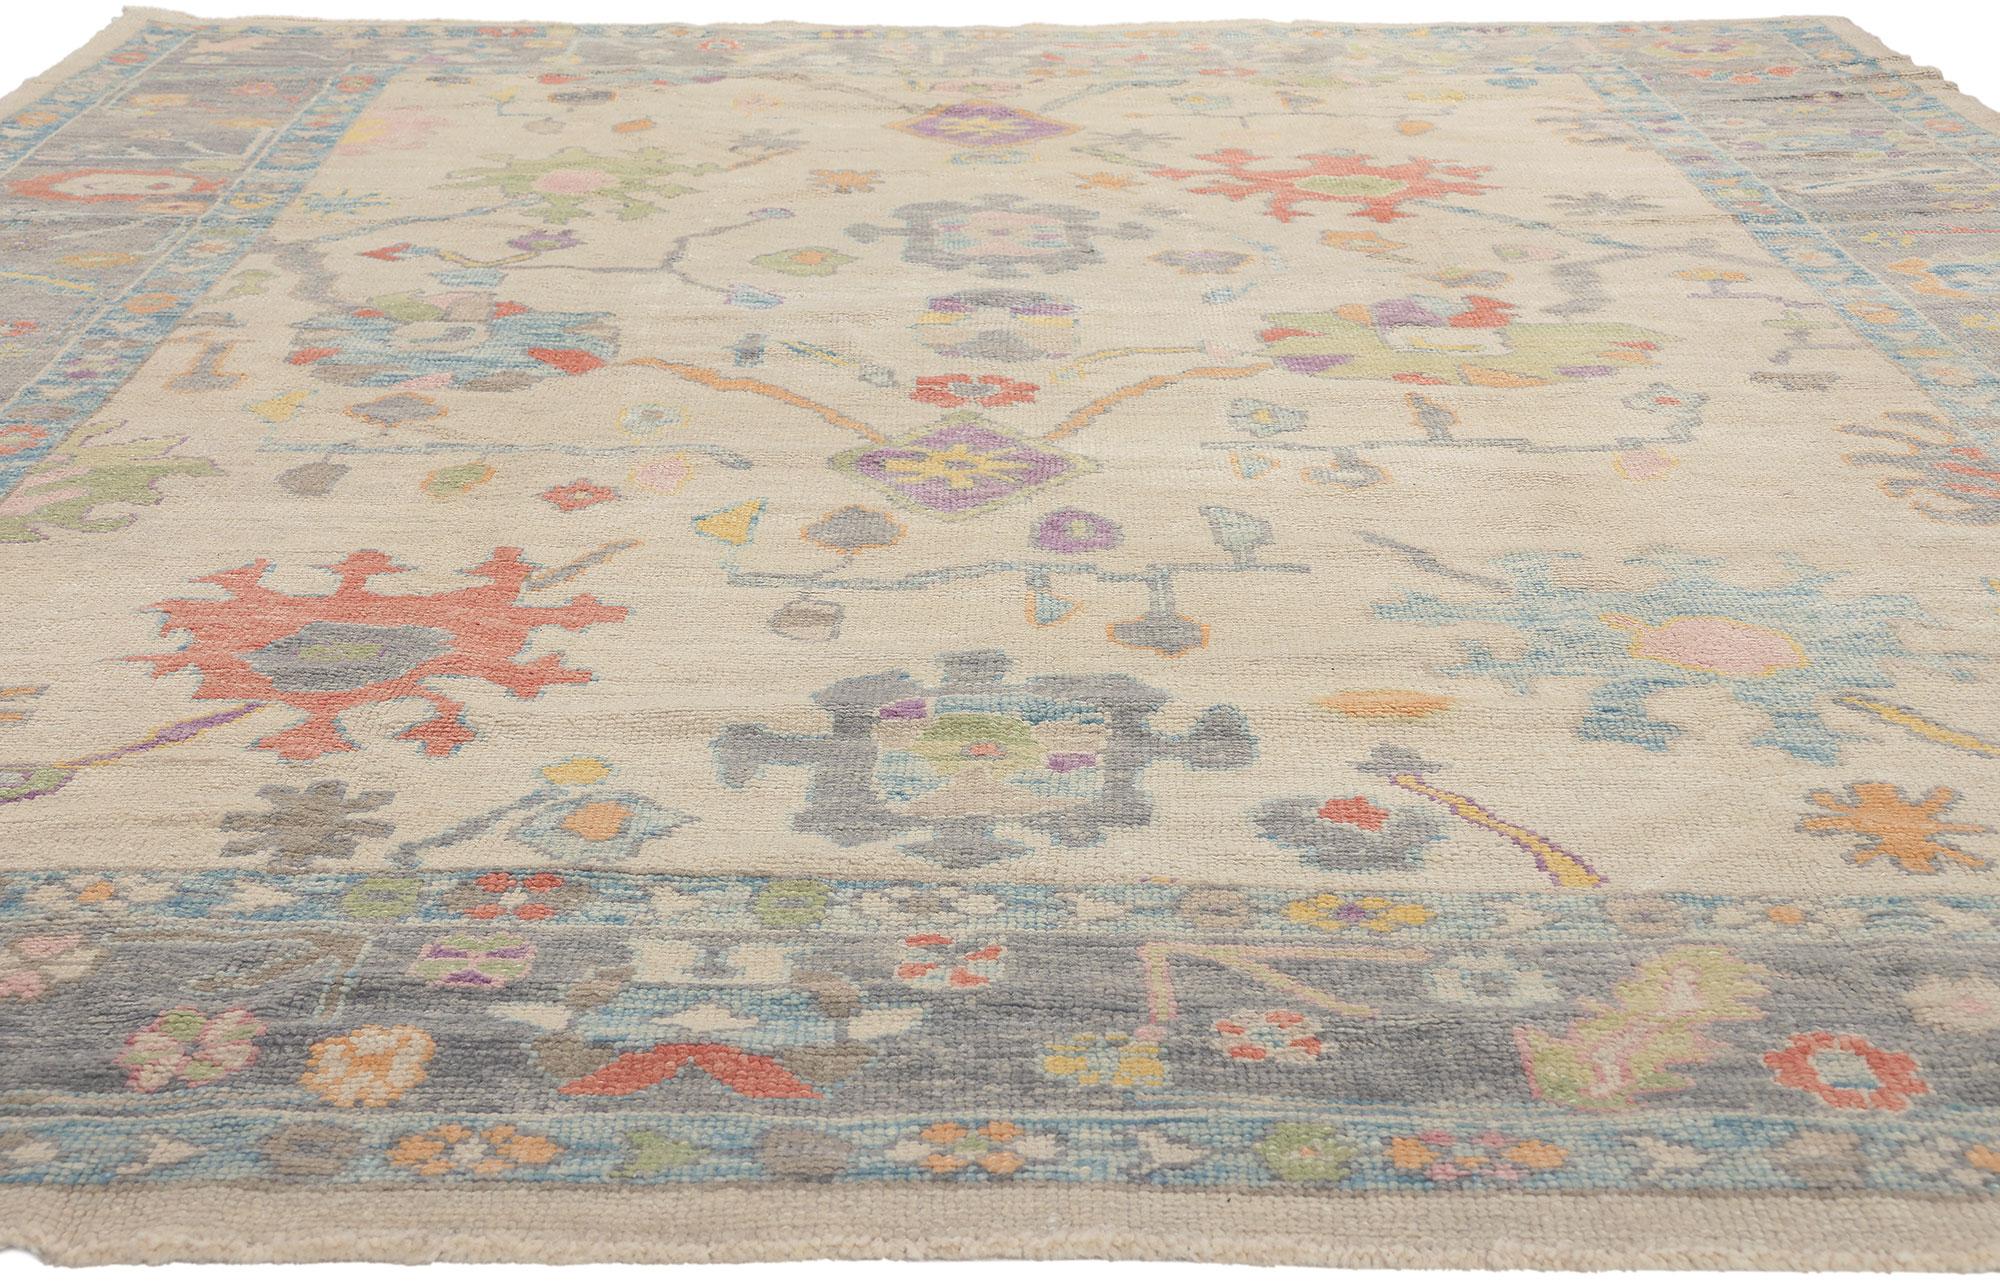 colorful oushak rugs